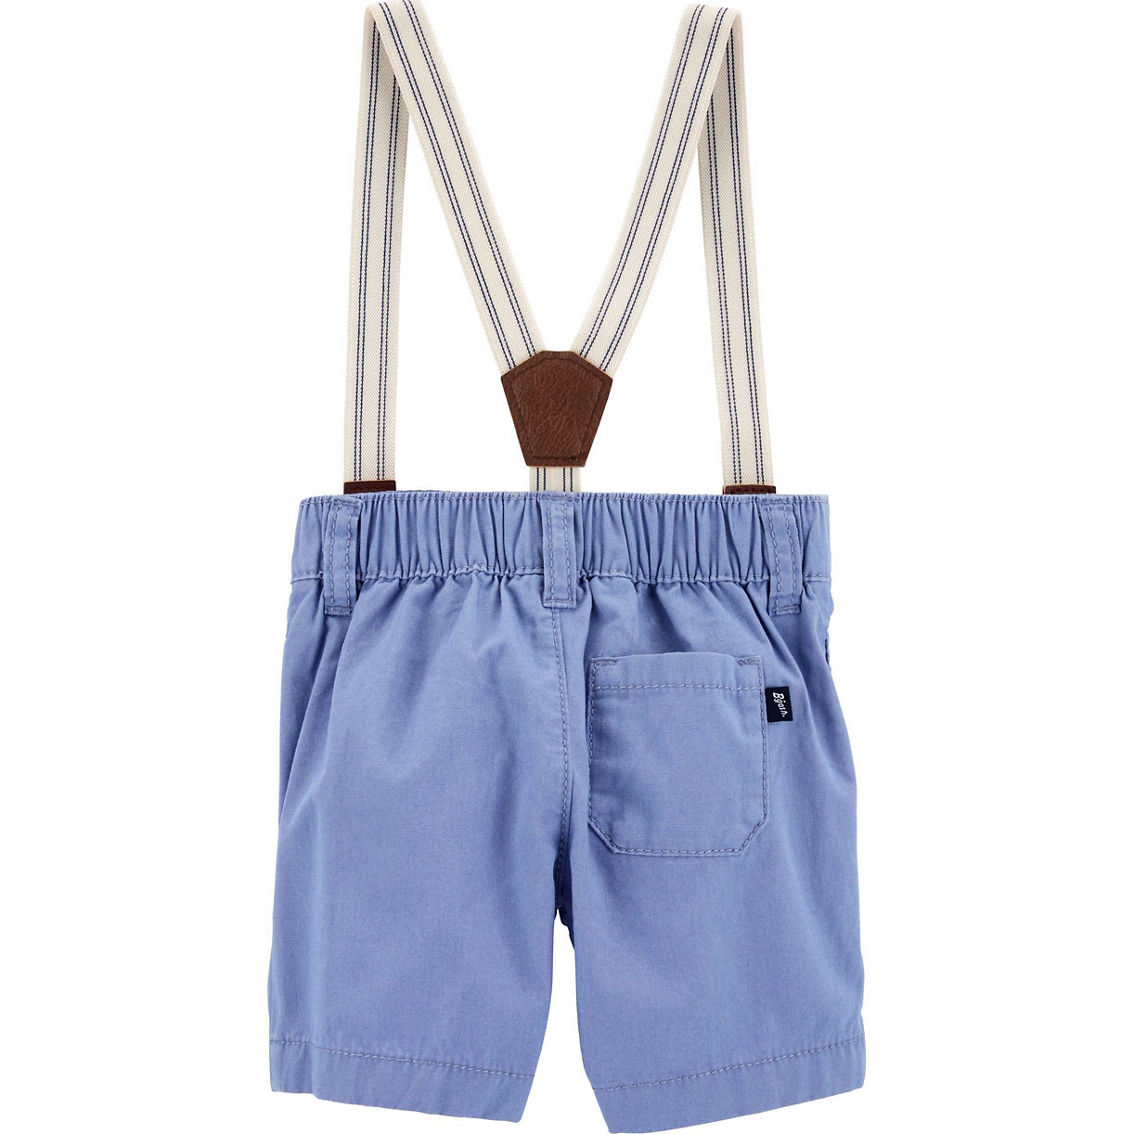 OshKosh B'gosh Baby Boys Suspender Shorts - Image 2 of 2